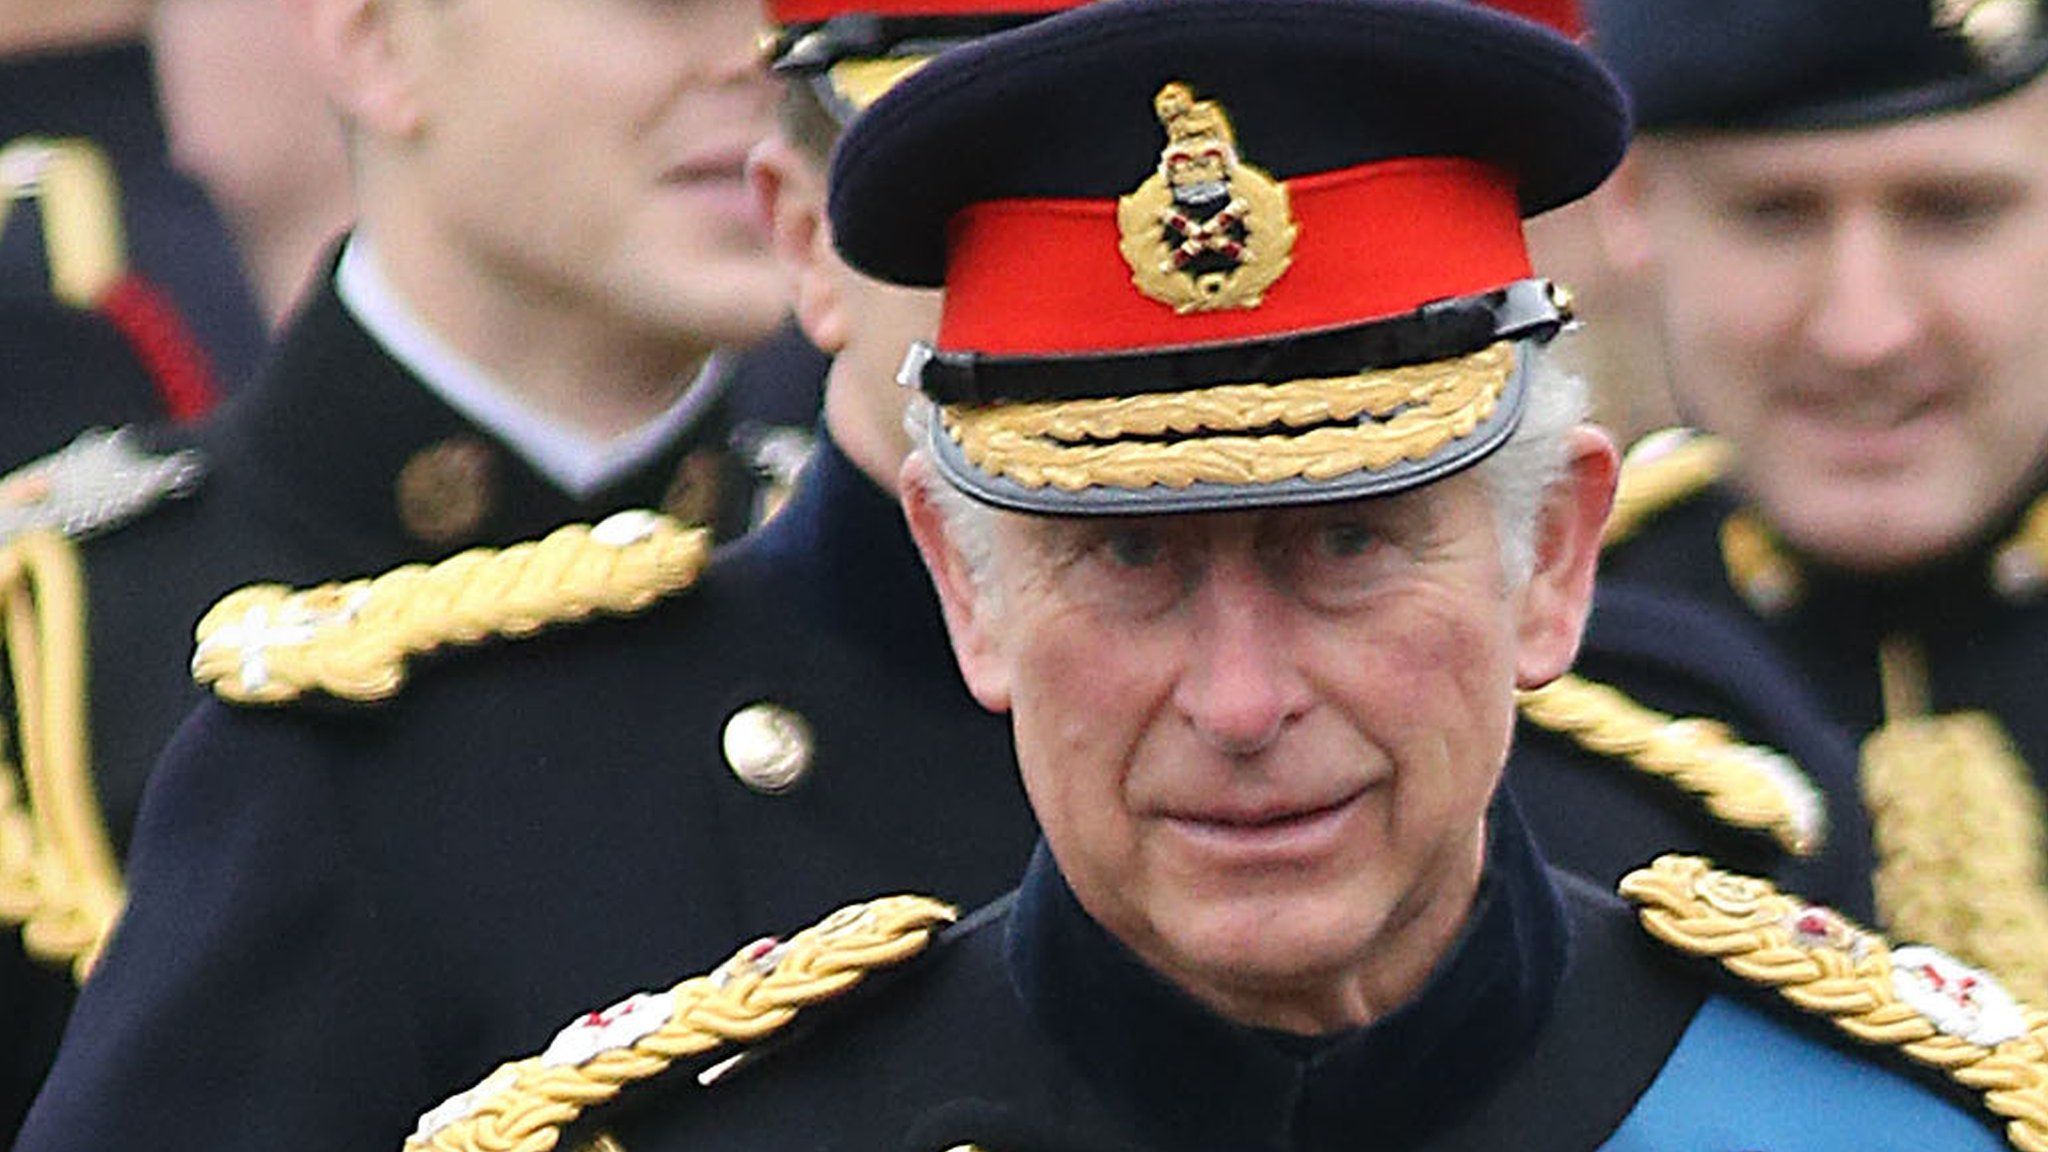 Prince of Wales at Sandhurst on 11 December 2015